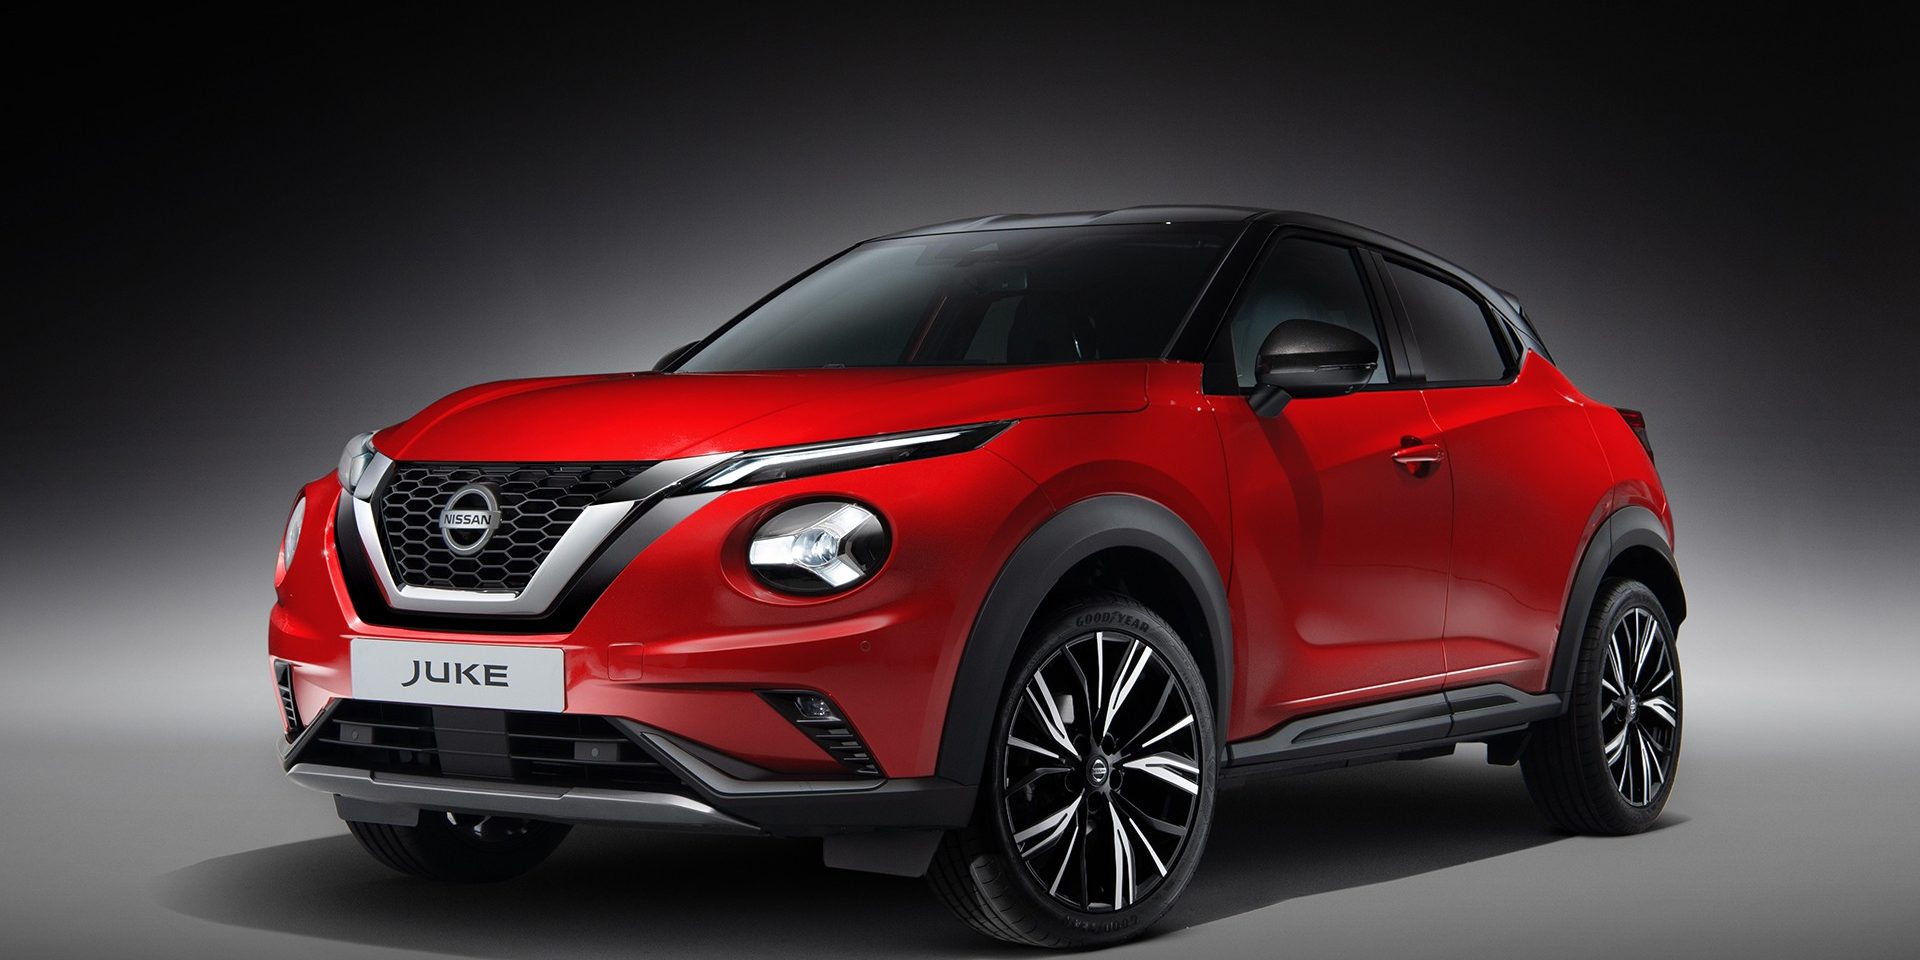 Nowy Nissan Juke debiutuje na polskim rynku cena i